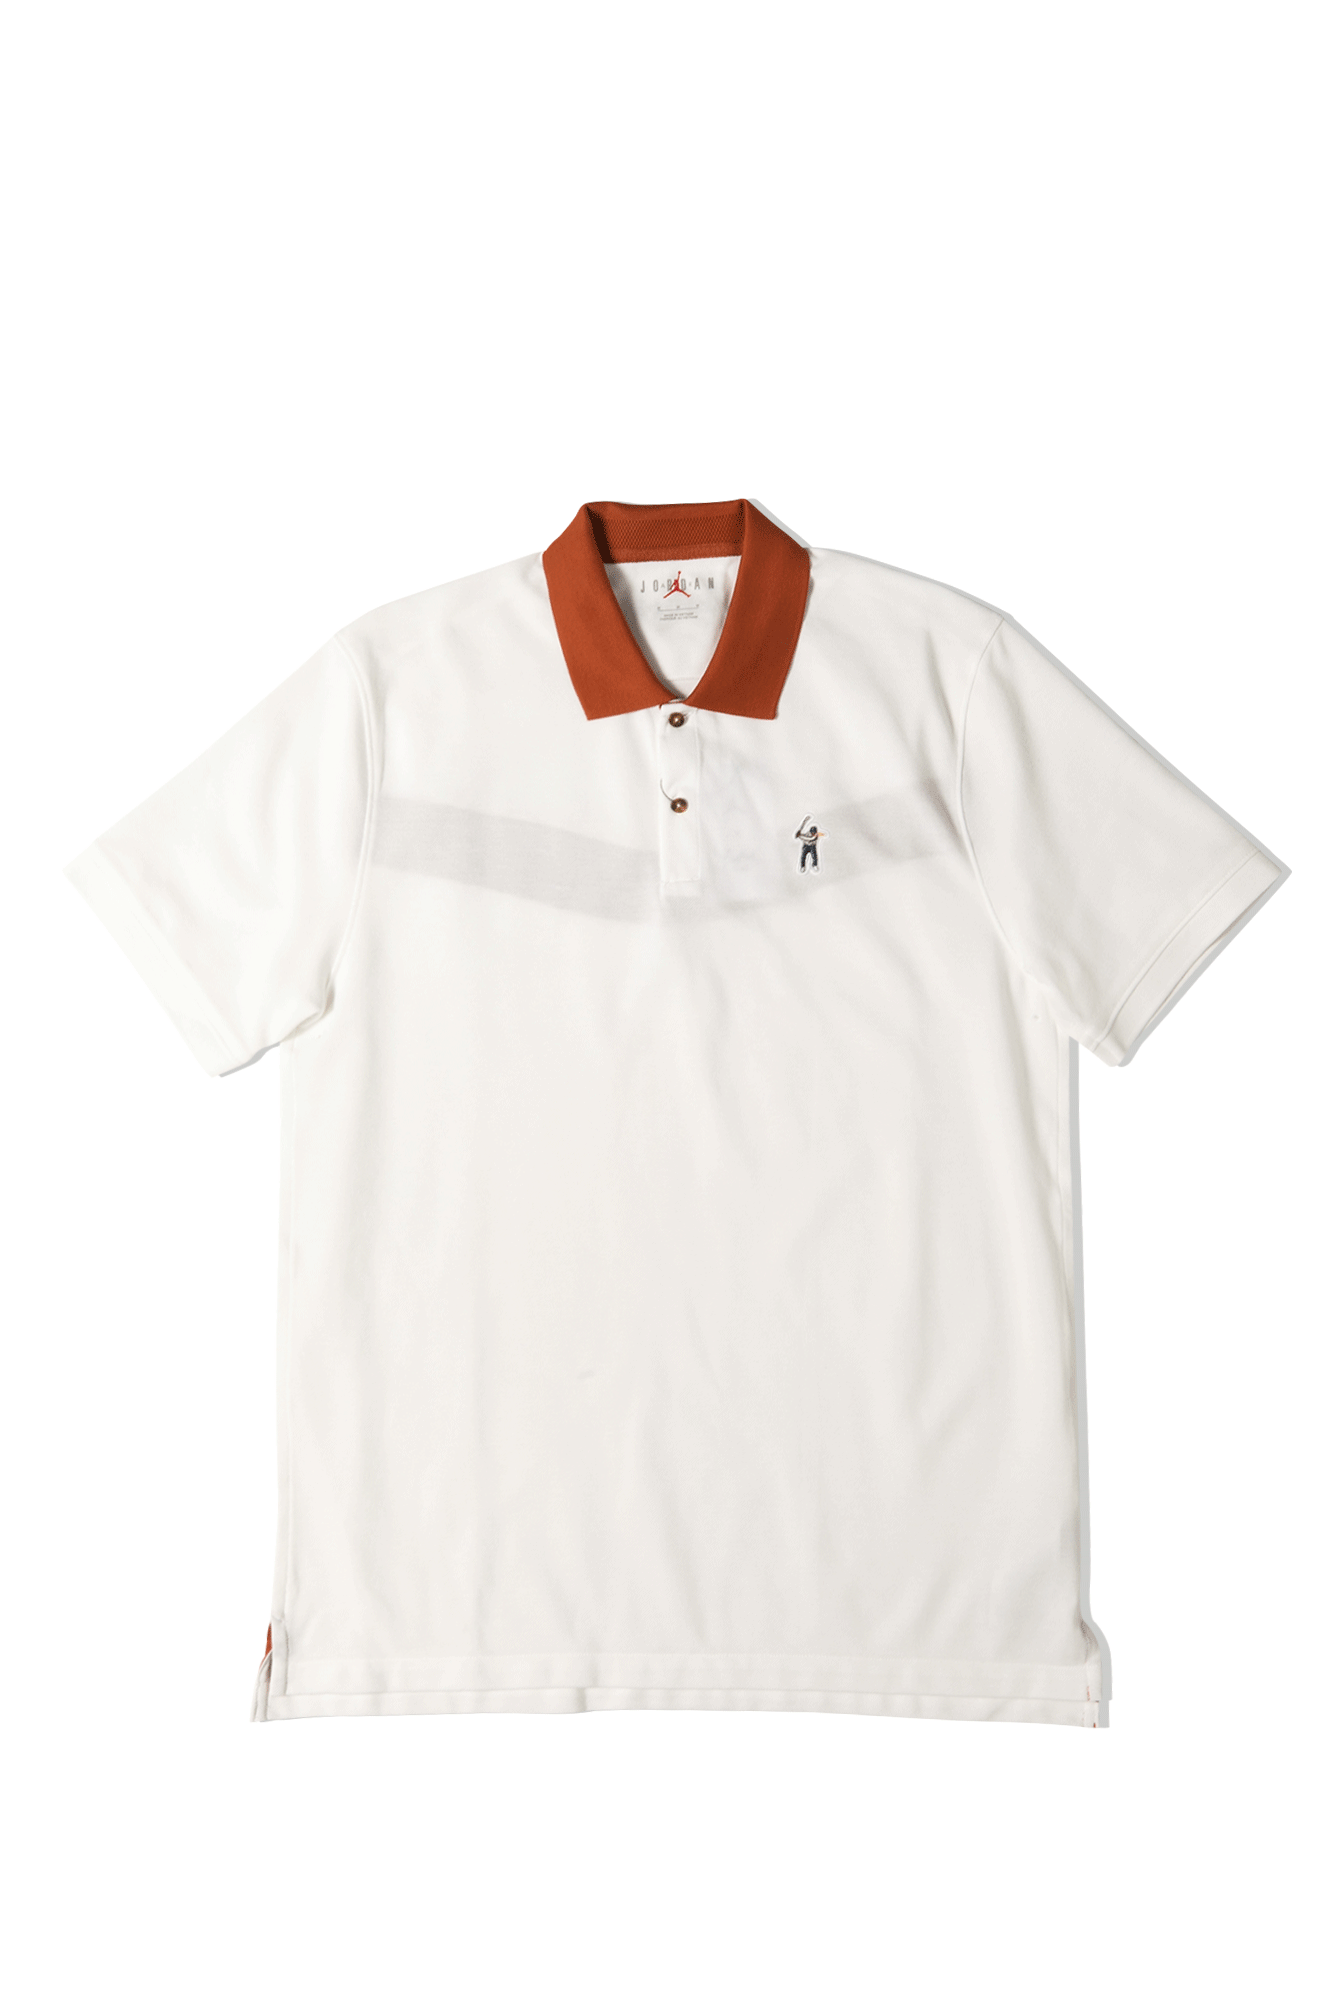 Polo Shirt x Eastside Golf